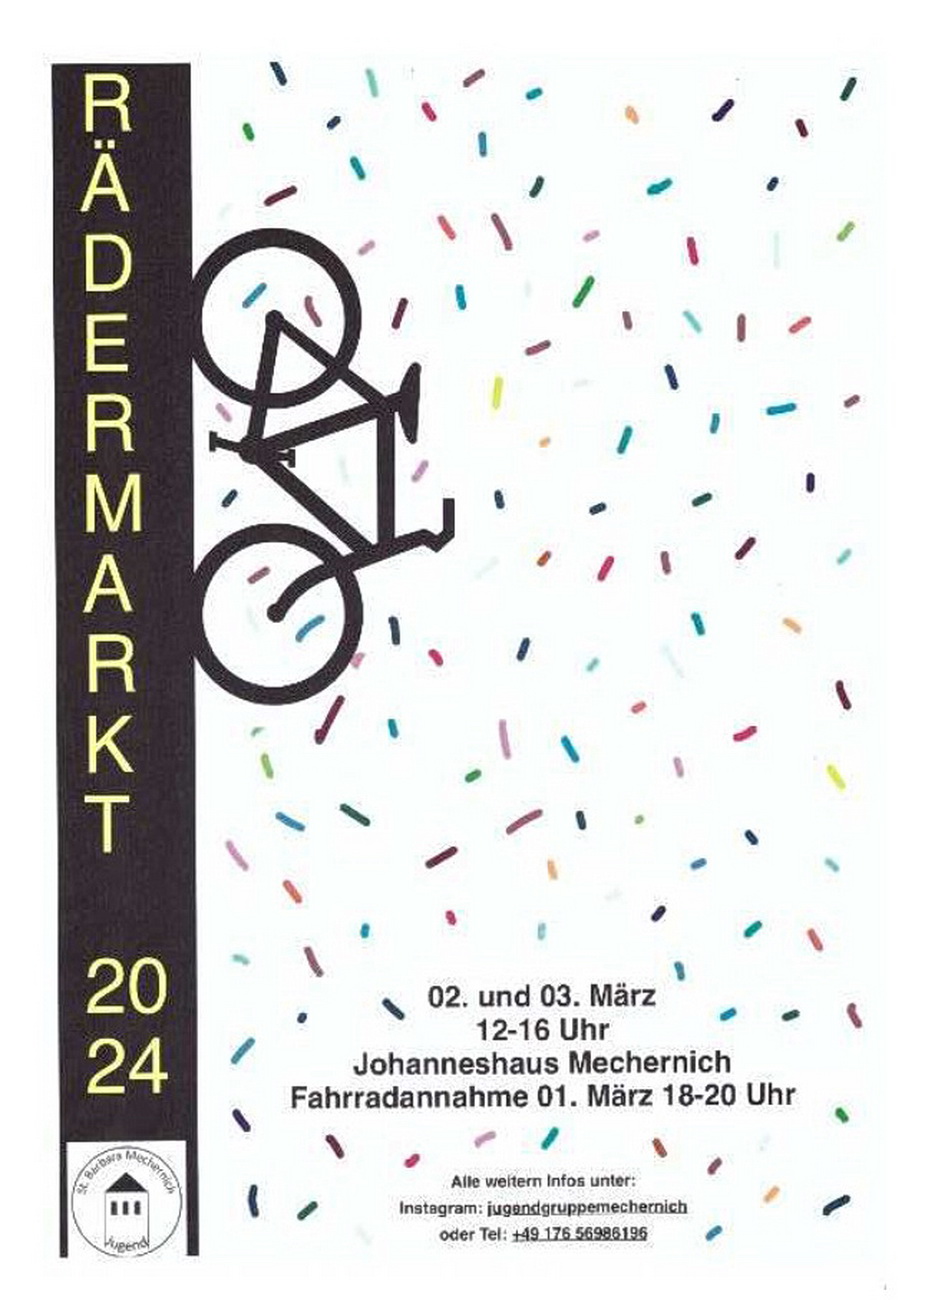 Mit diesem Aushang wirbt die Jugendgruppe der Gemeinschaft der Gemeinden St. Barbara Mechernich für ihren Rädermarkt im Johanneshaus neben der Kirche am Wochenende 2./3. März. (c) Repro: Manfred Lang/pp/Agentur ProfiPress